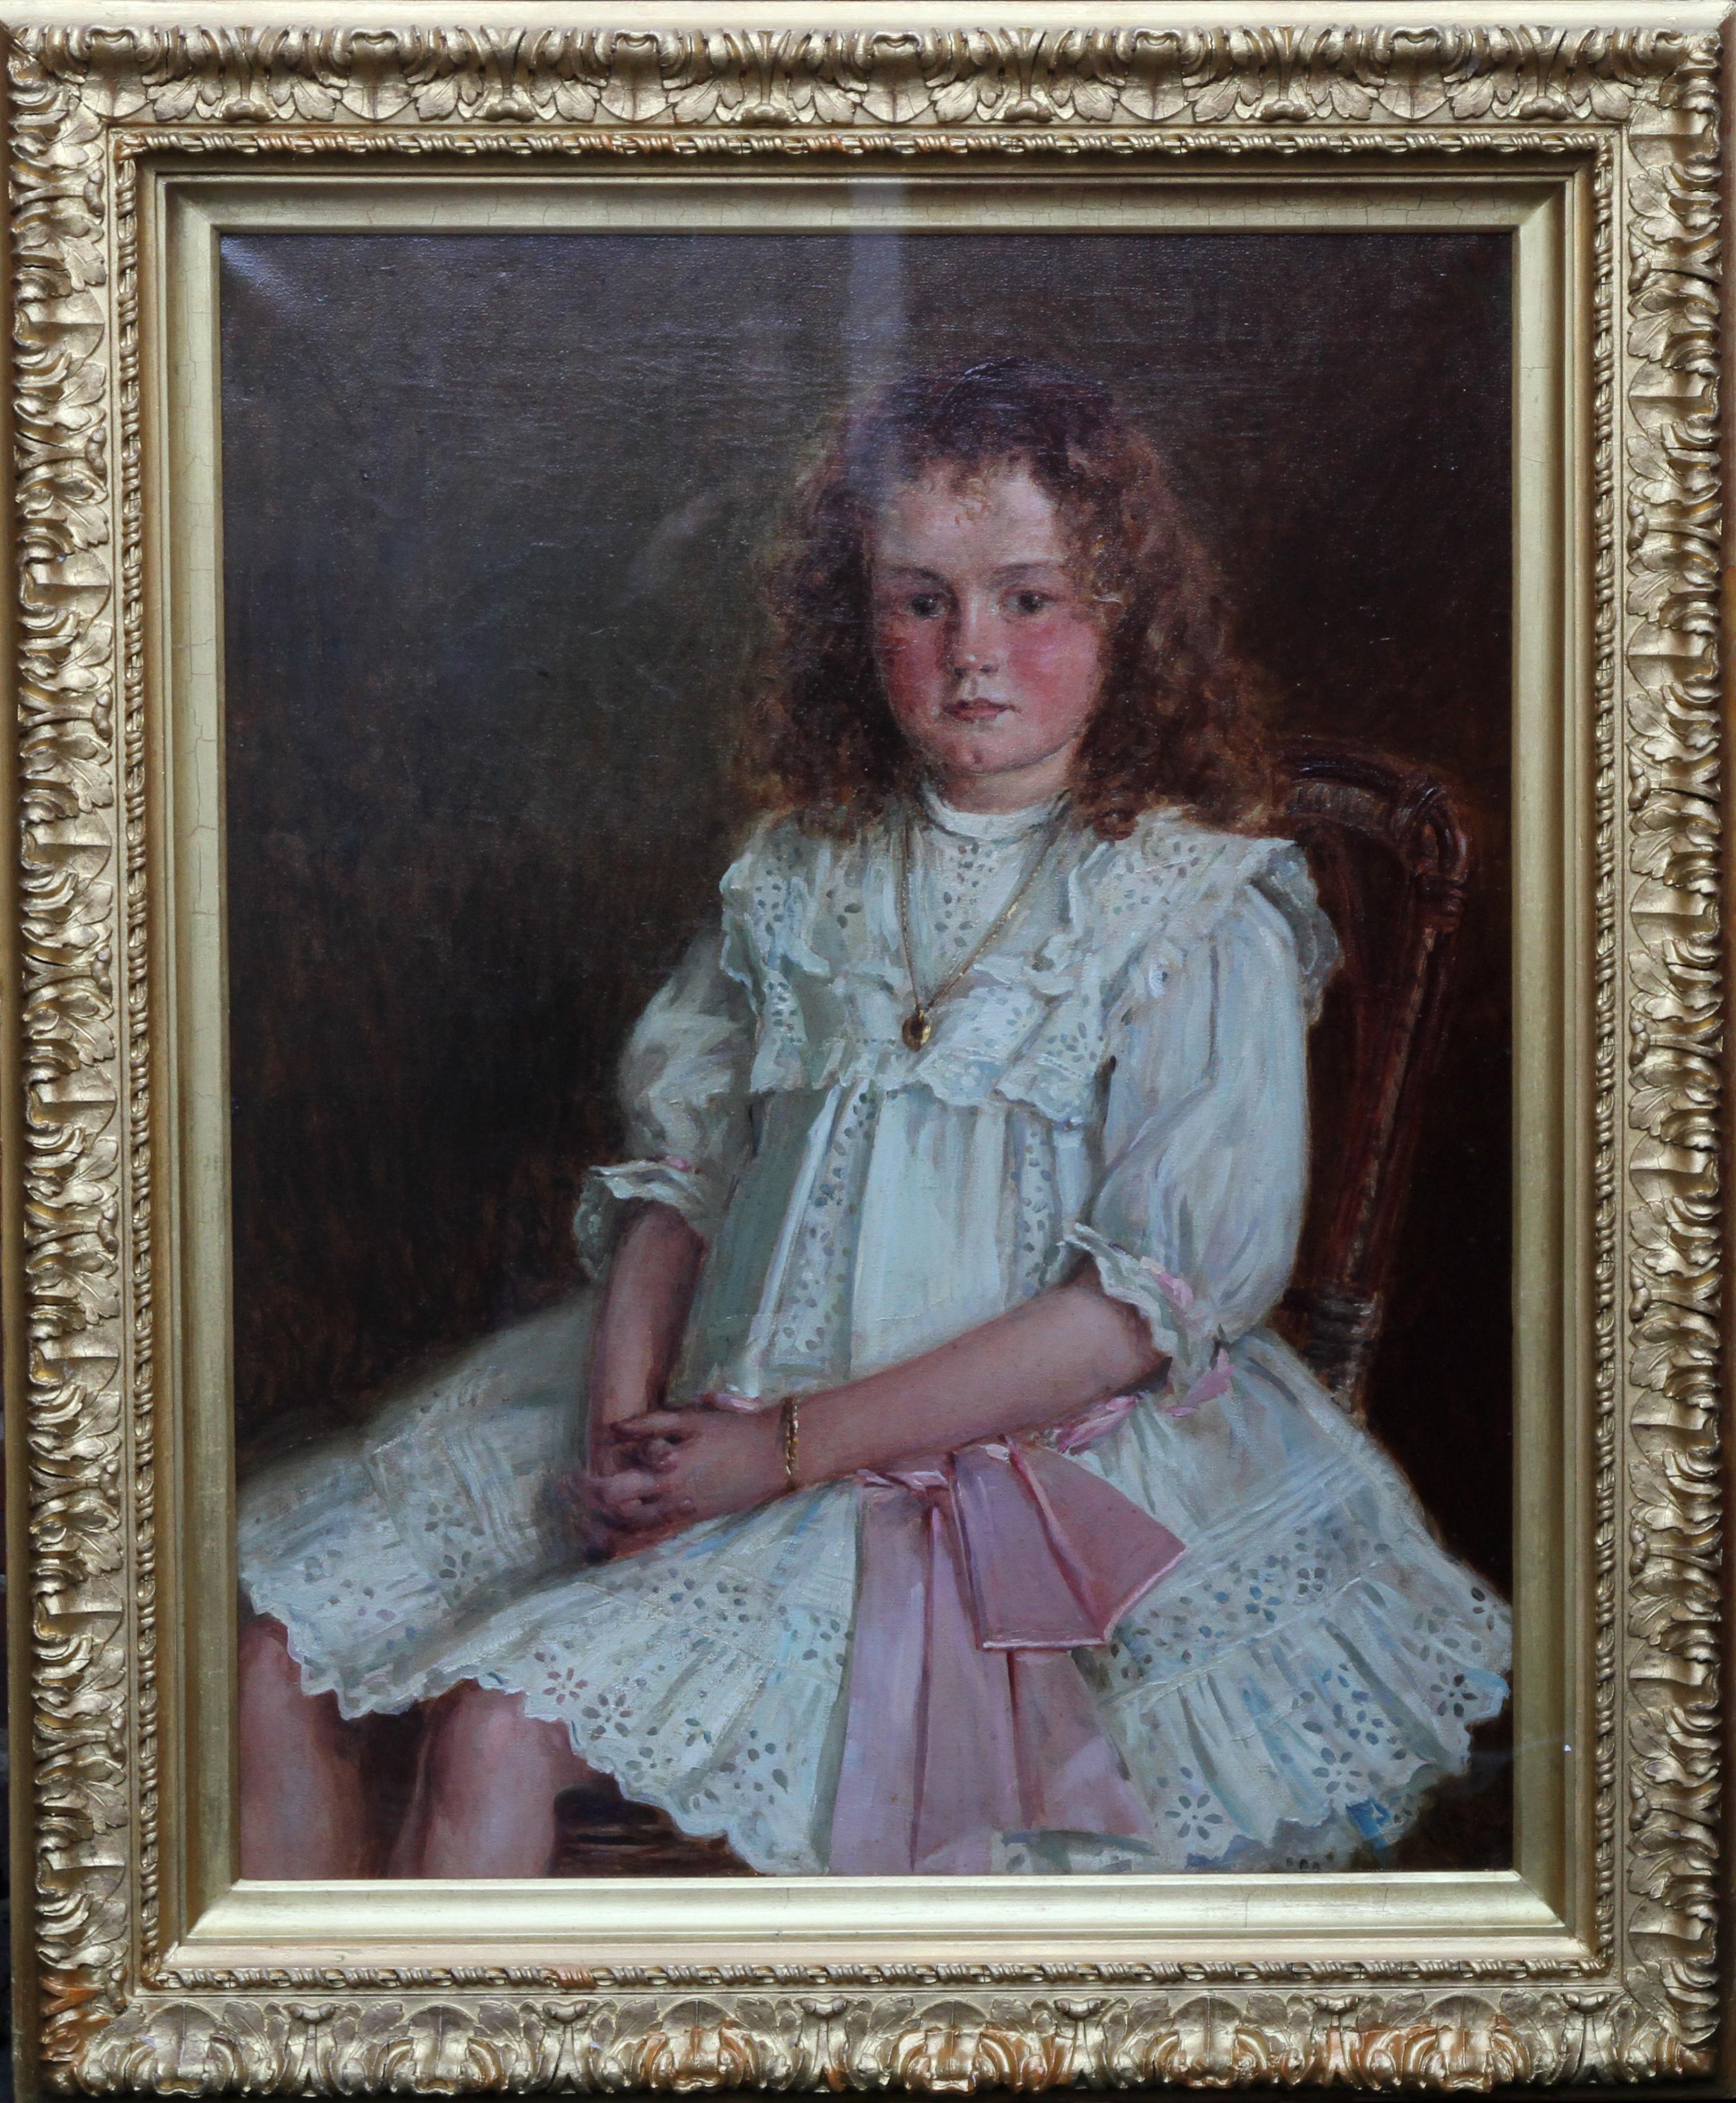 Ernest Higgins Rigg Figurative Painting – Porträt eines jungen walisischen Mädchens – Enid Richards – britische edwardianische Staithes-Kunst